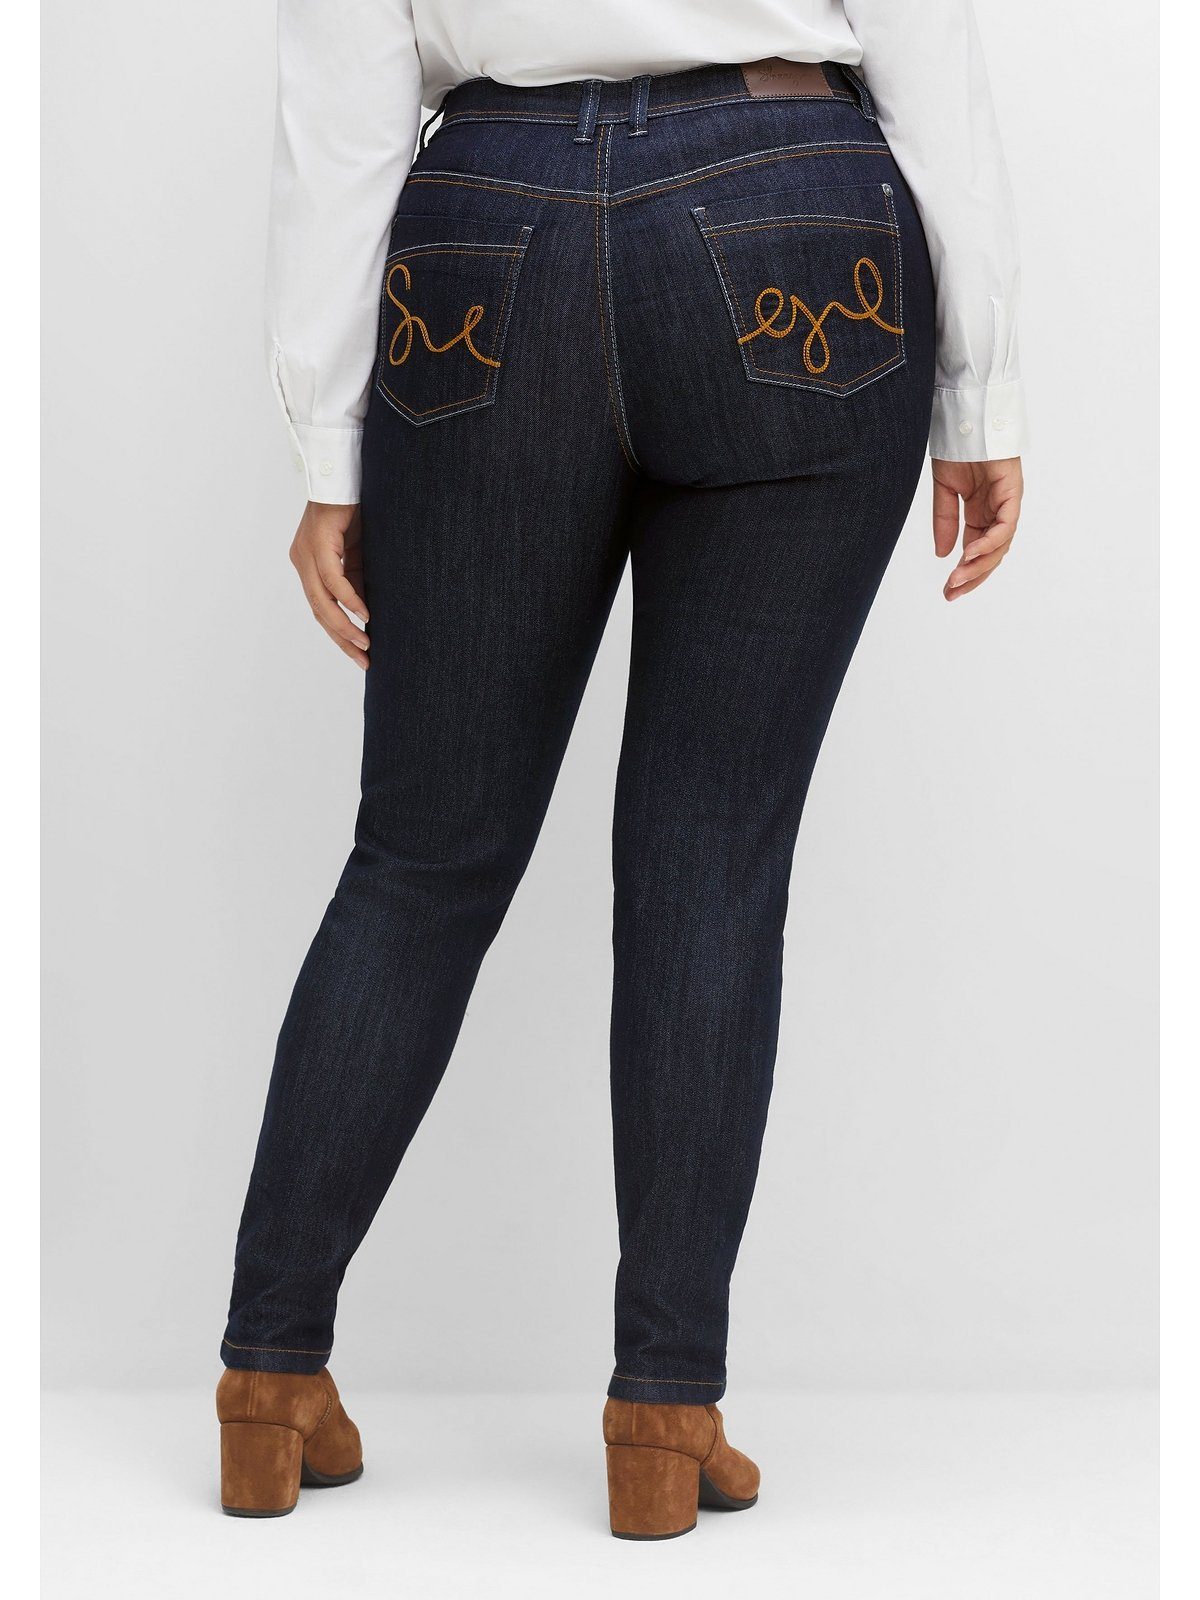 Sheego Stretch-Jeans Große Größen zweifarbigen Denim black mit »Die Schmale« blue Kontrastnähten